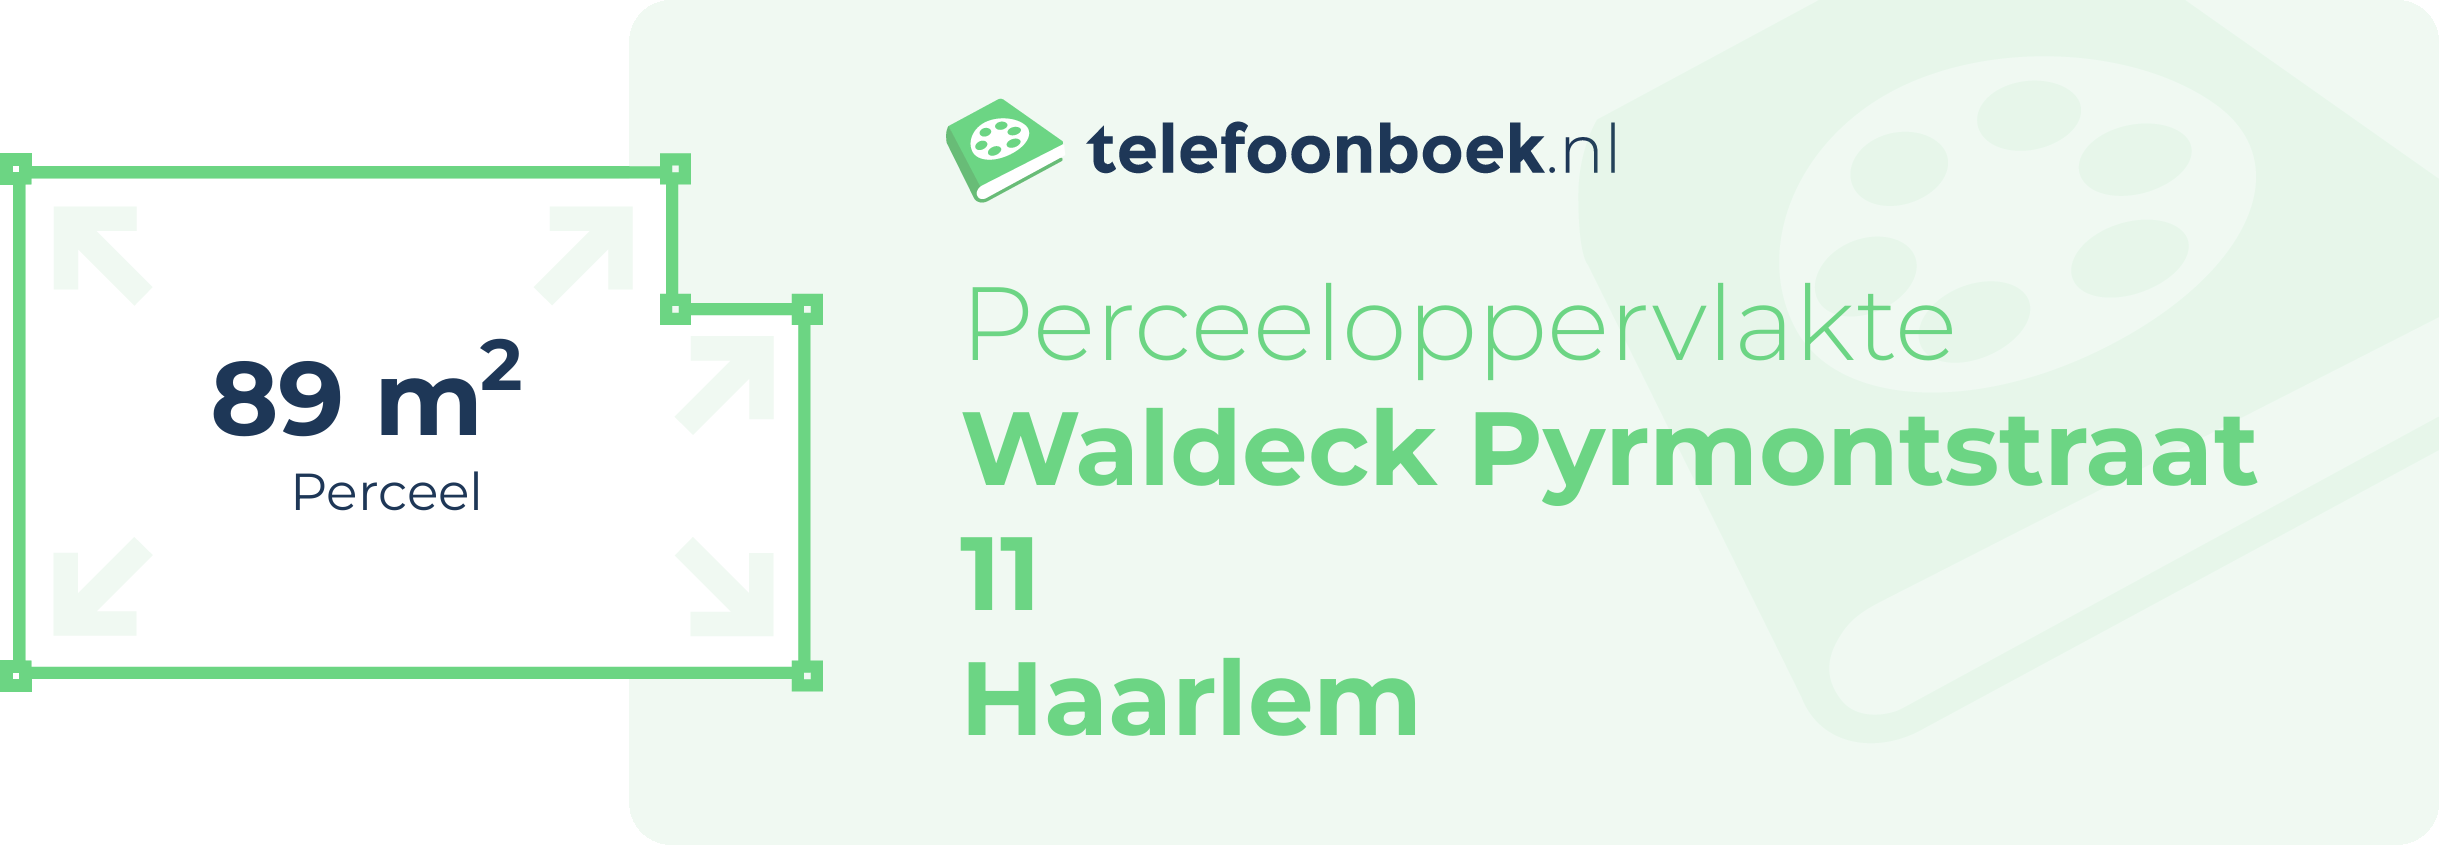 Perceeloppervlakte Waldeck Pyrmontstraat 11 Haarlem